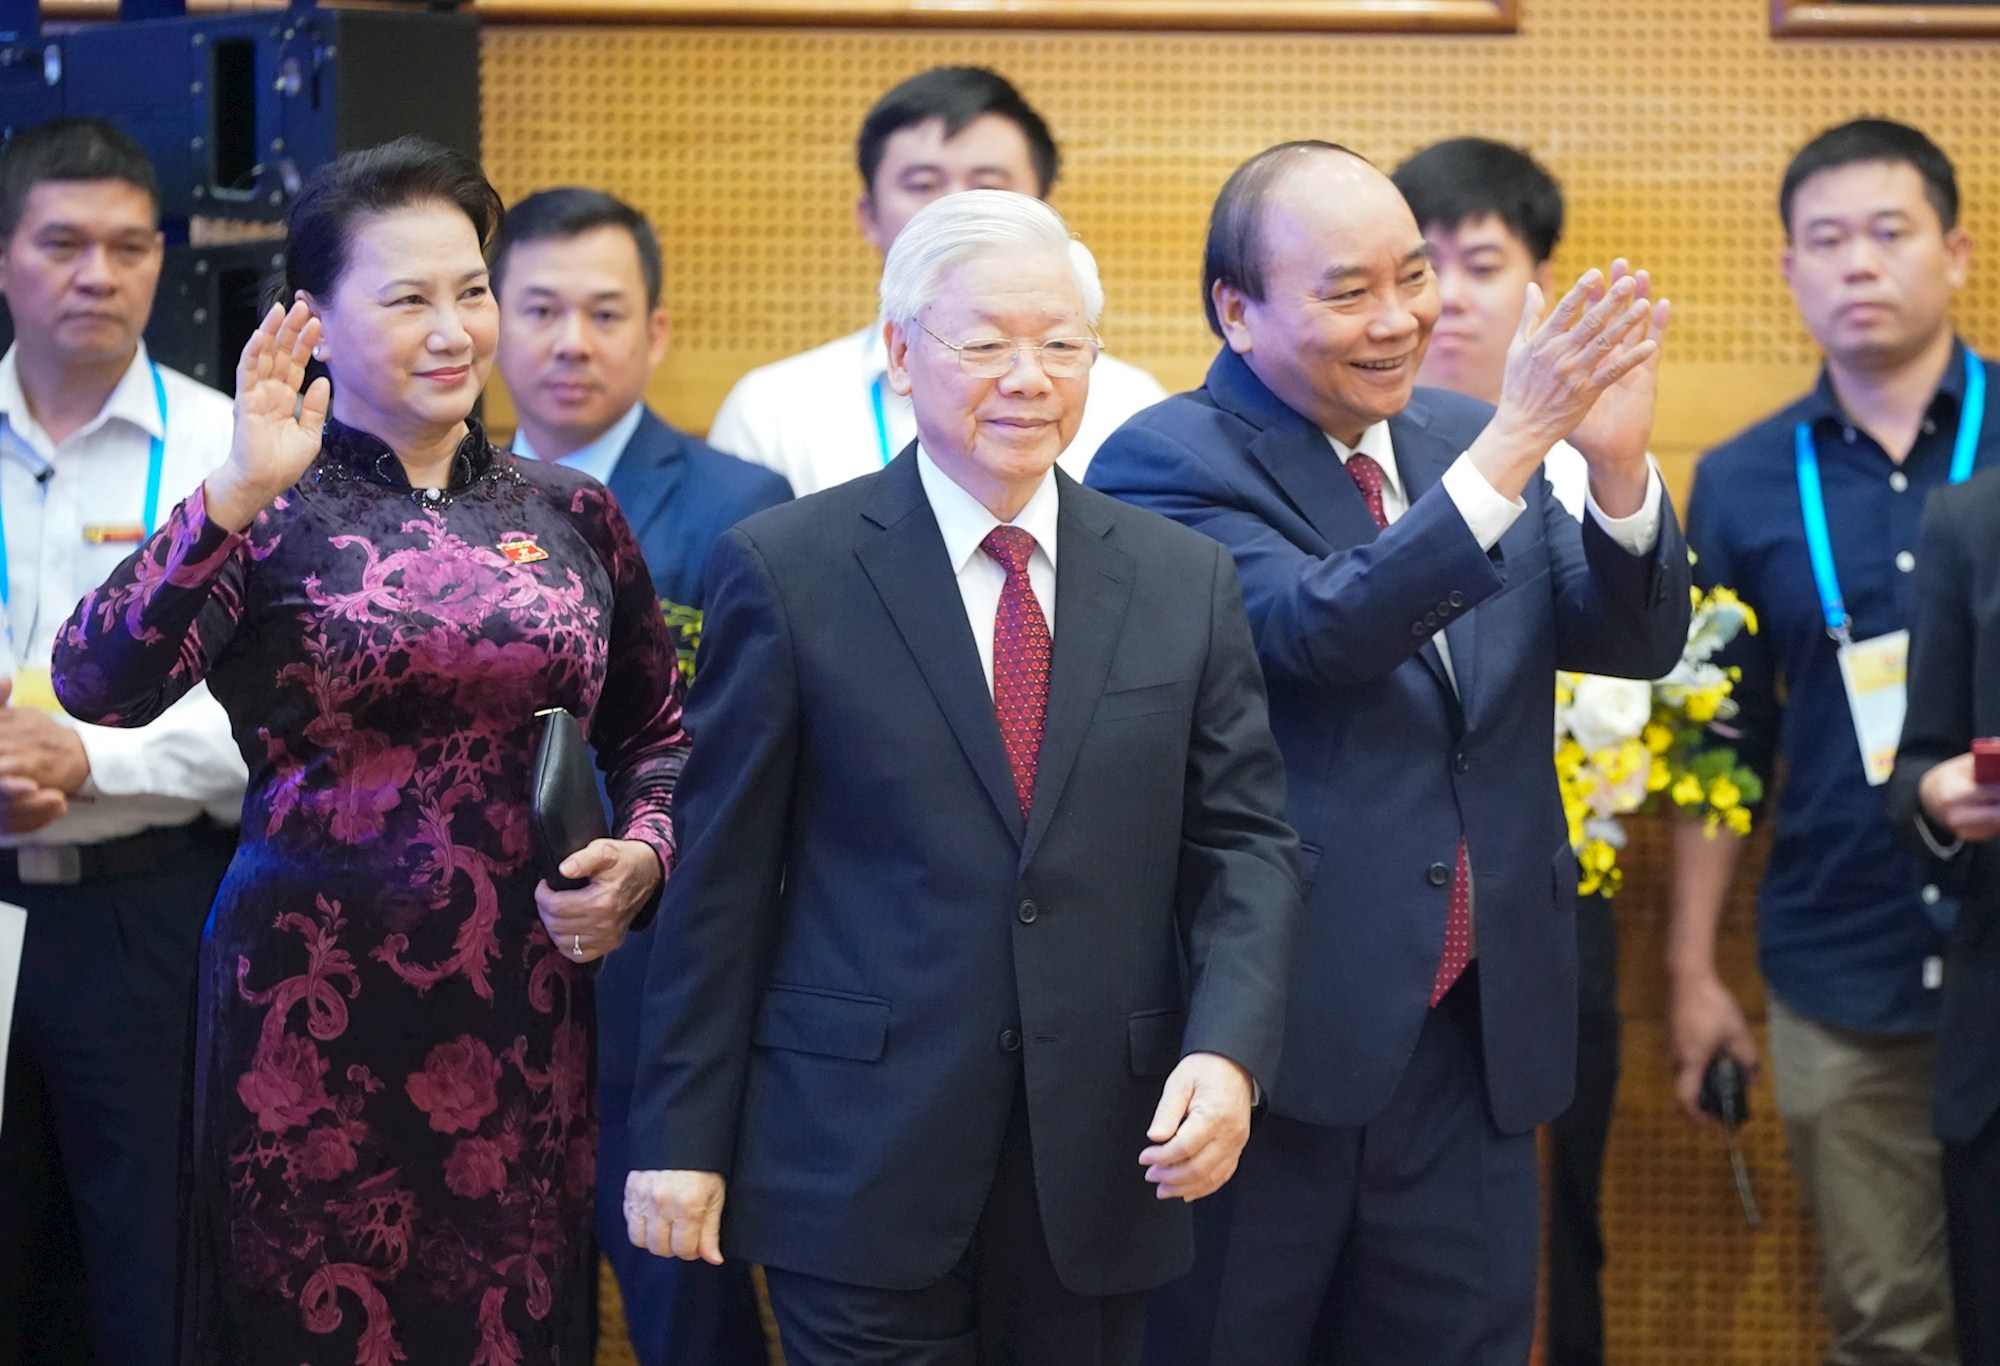 Sáng nay, Hội nghị Cấp cao ASEAN lần thứ 37 khai mạc tại Hà Nội - Ảnh 1.